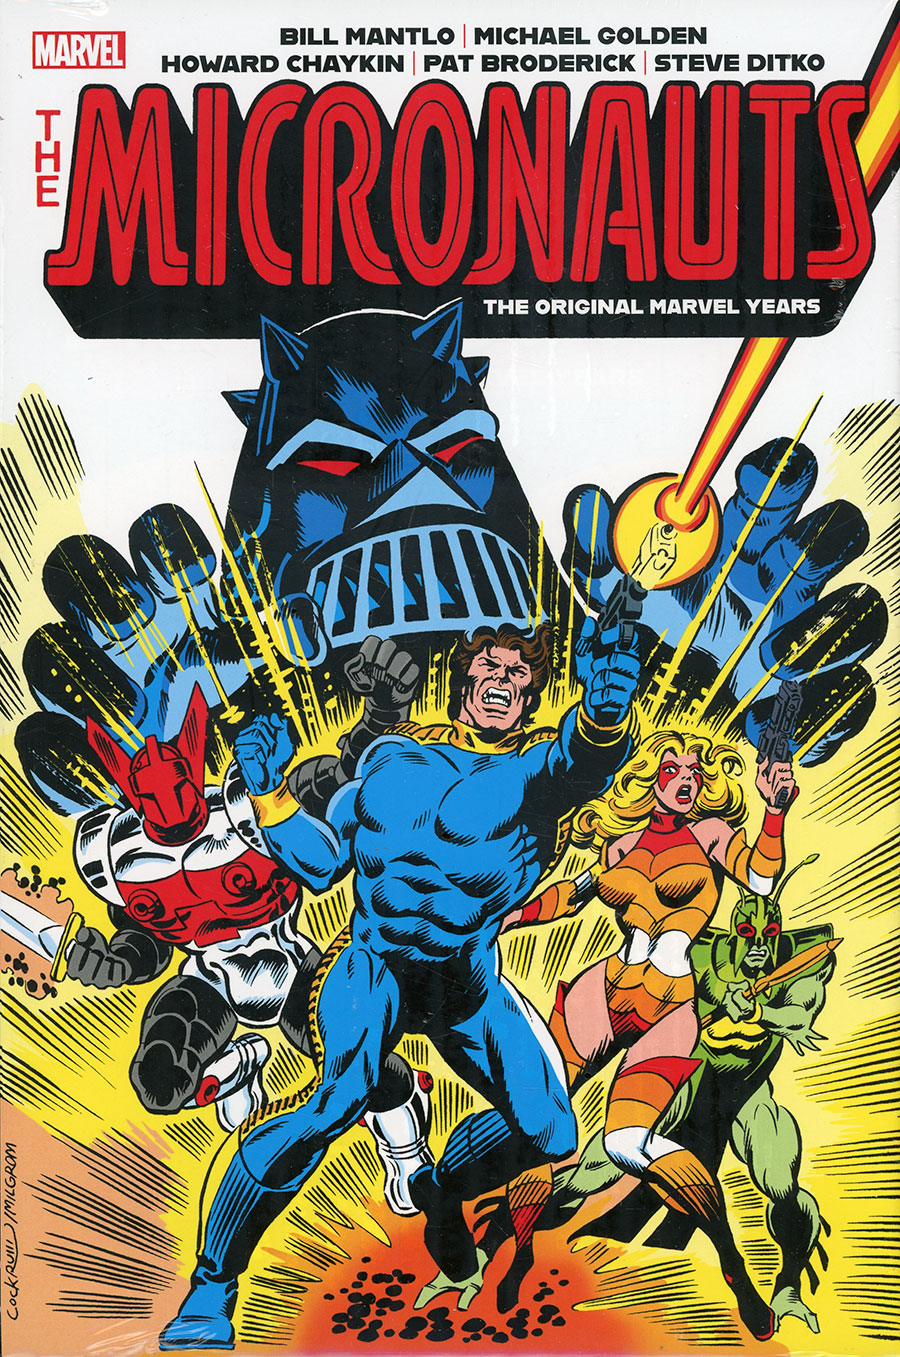 Micronauts Original Marvel Years Omnibus Vol 1 HC Book Market Dave Cockrum Cover